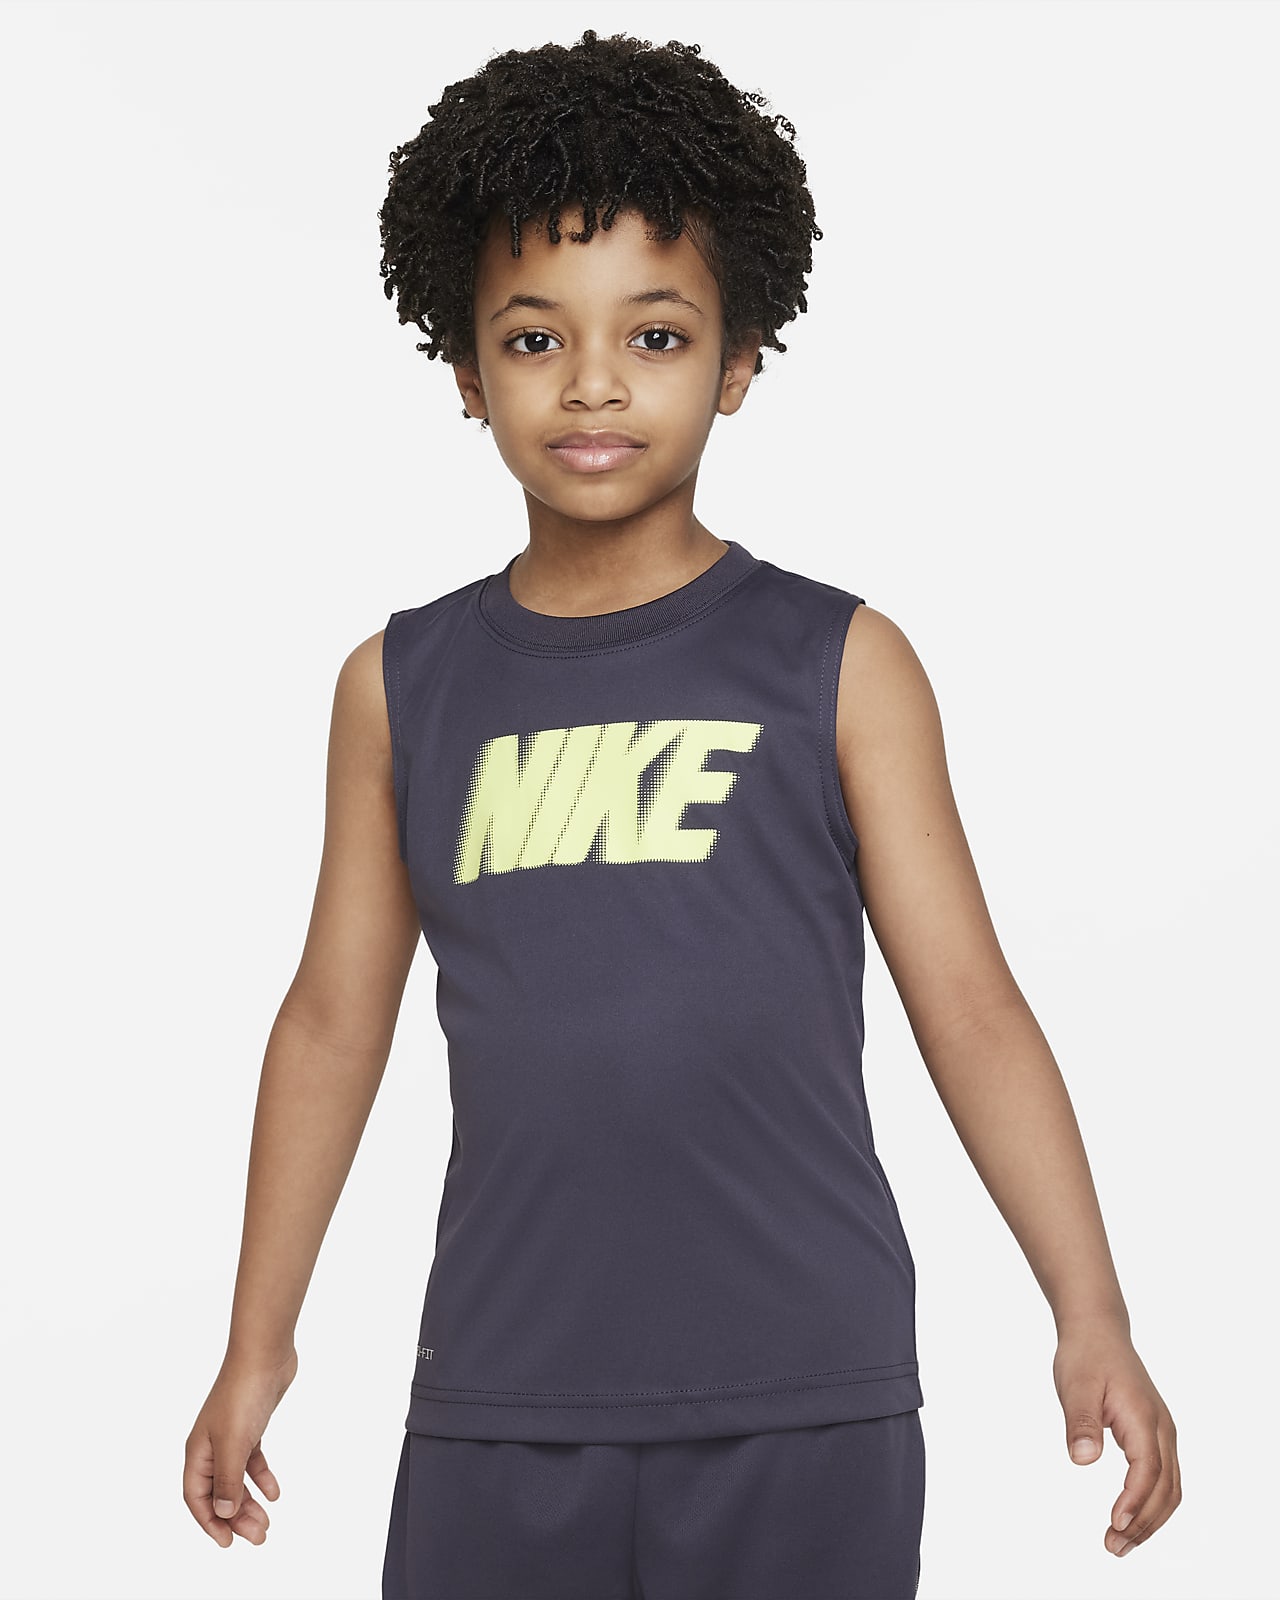 Nike All Day Play Dri-FIT Muscle Tee Little Kids' Dri-FIT Tank